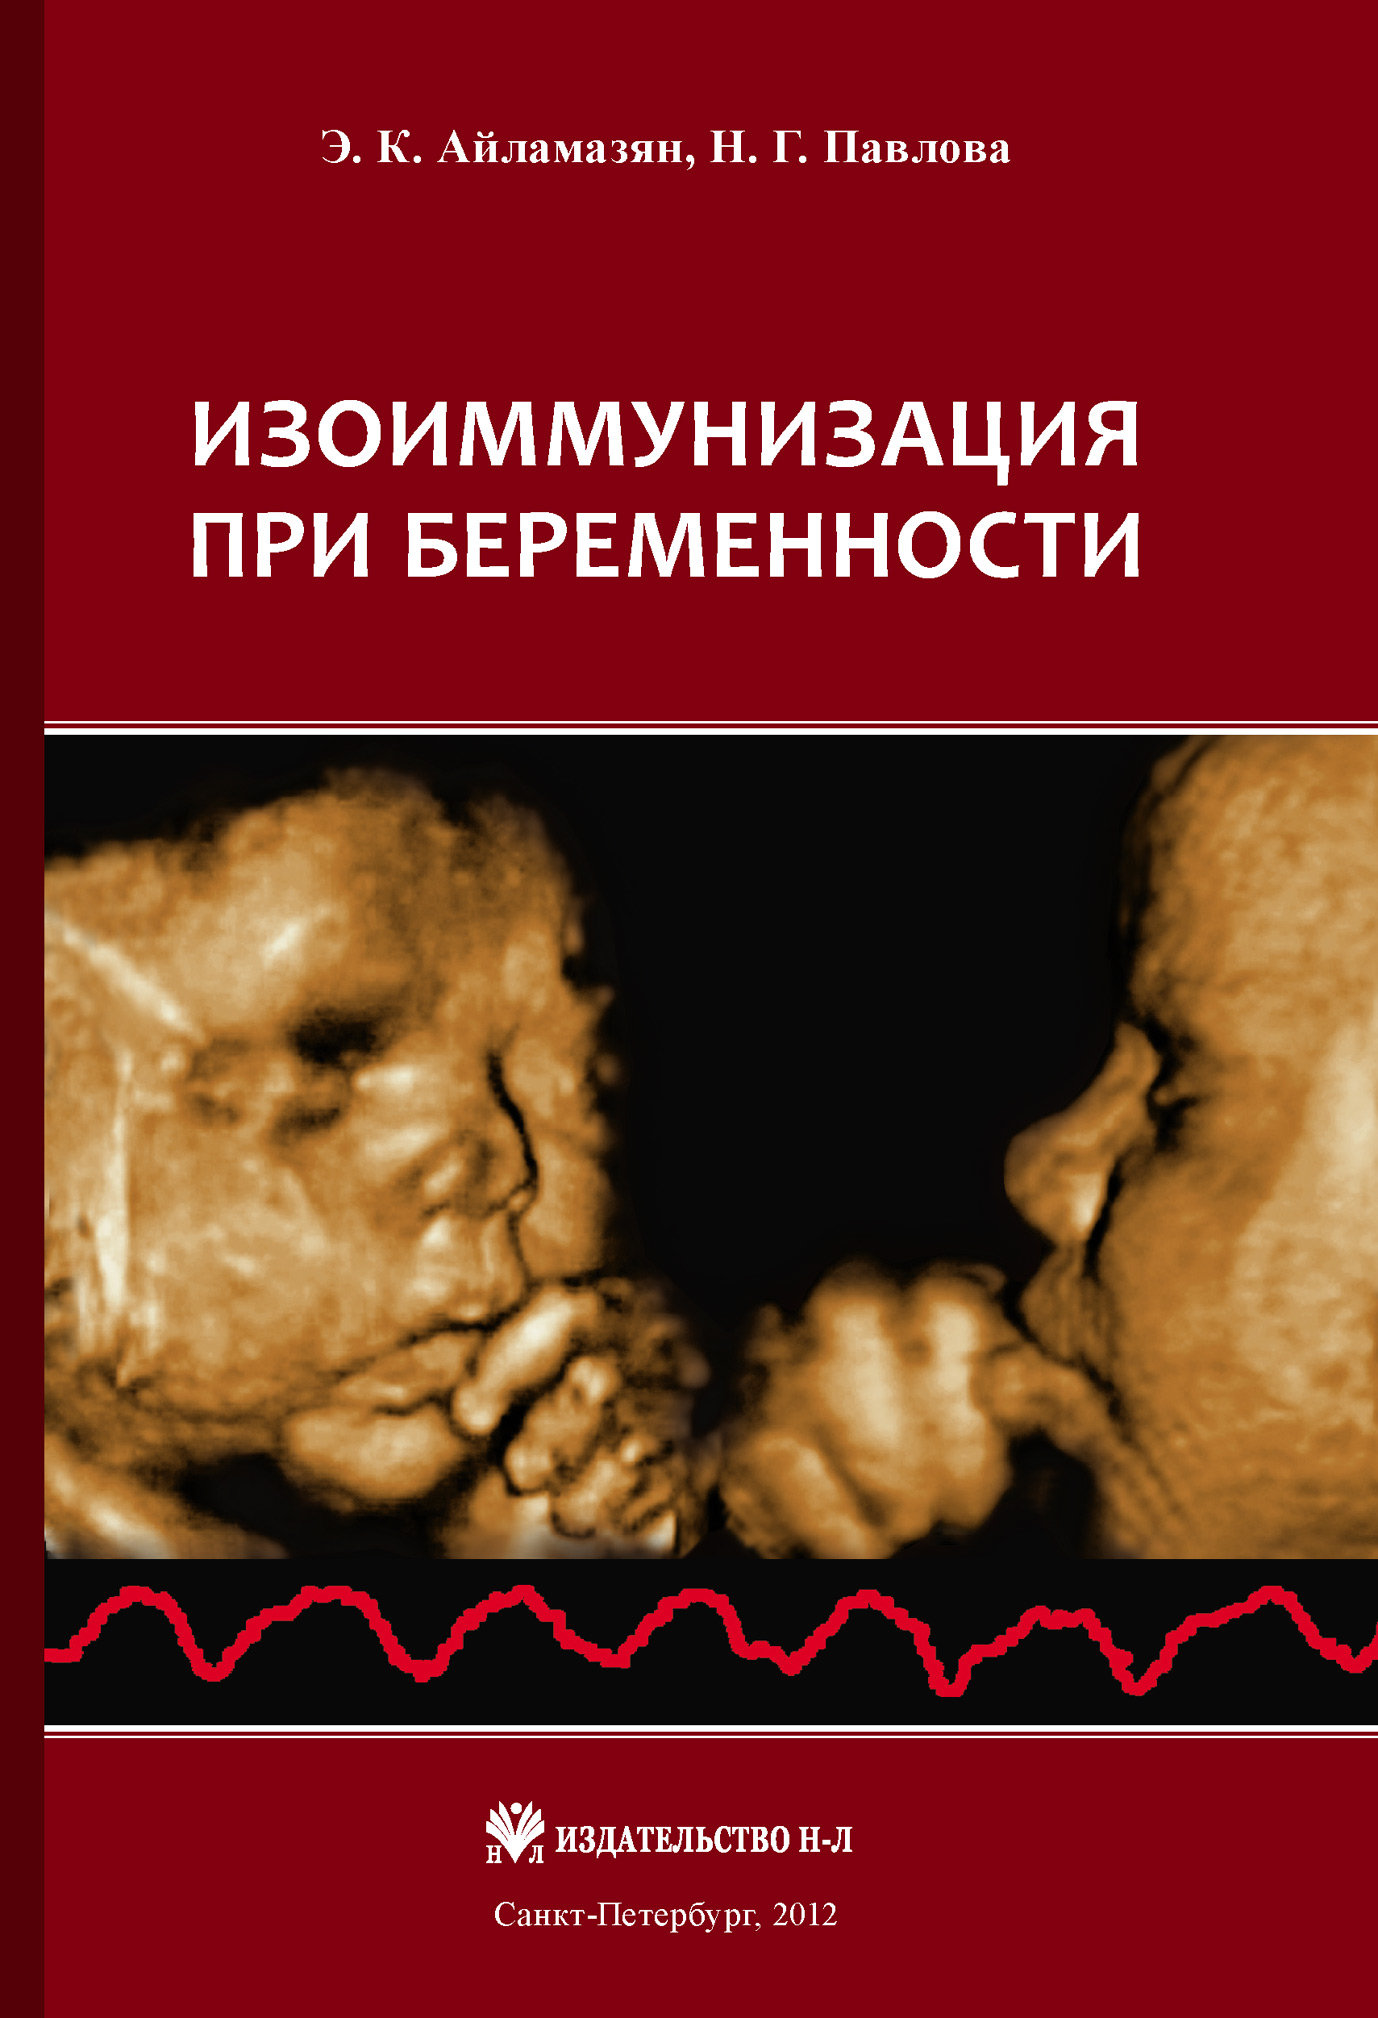 Книга Изоиммунизация при беременности из серии , созданная Наталия Павлова, Эдуард Айламазян, может относится к жанру Медицина. Стоимость книги Изоиммунизация при беременности  с идентификатором 4360675 составляет 169.90 руб.